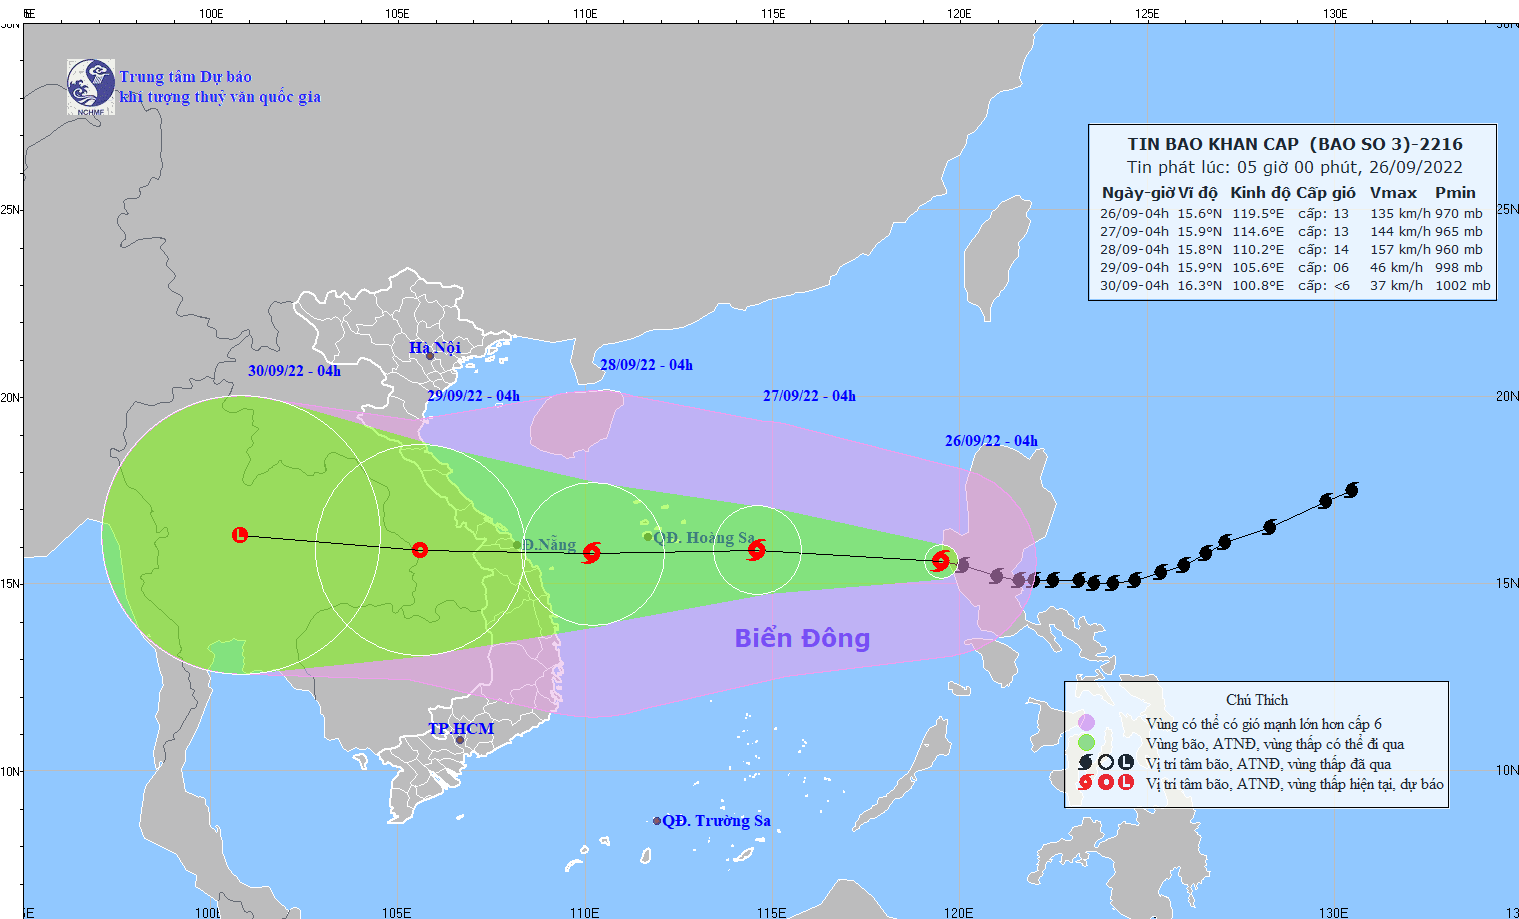 NÓNG: Bão Noru đi vào biển Đông và tăng cấp trở lại, nhiều tỉnh miền Trung 'báo động đỏ' - Ảnh 1.